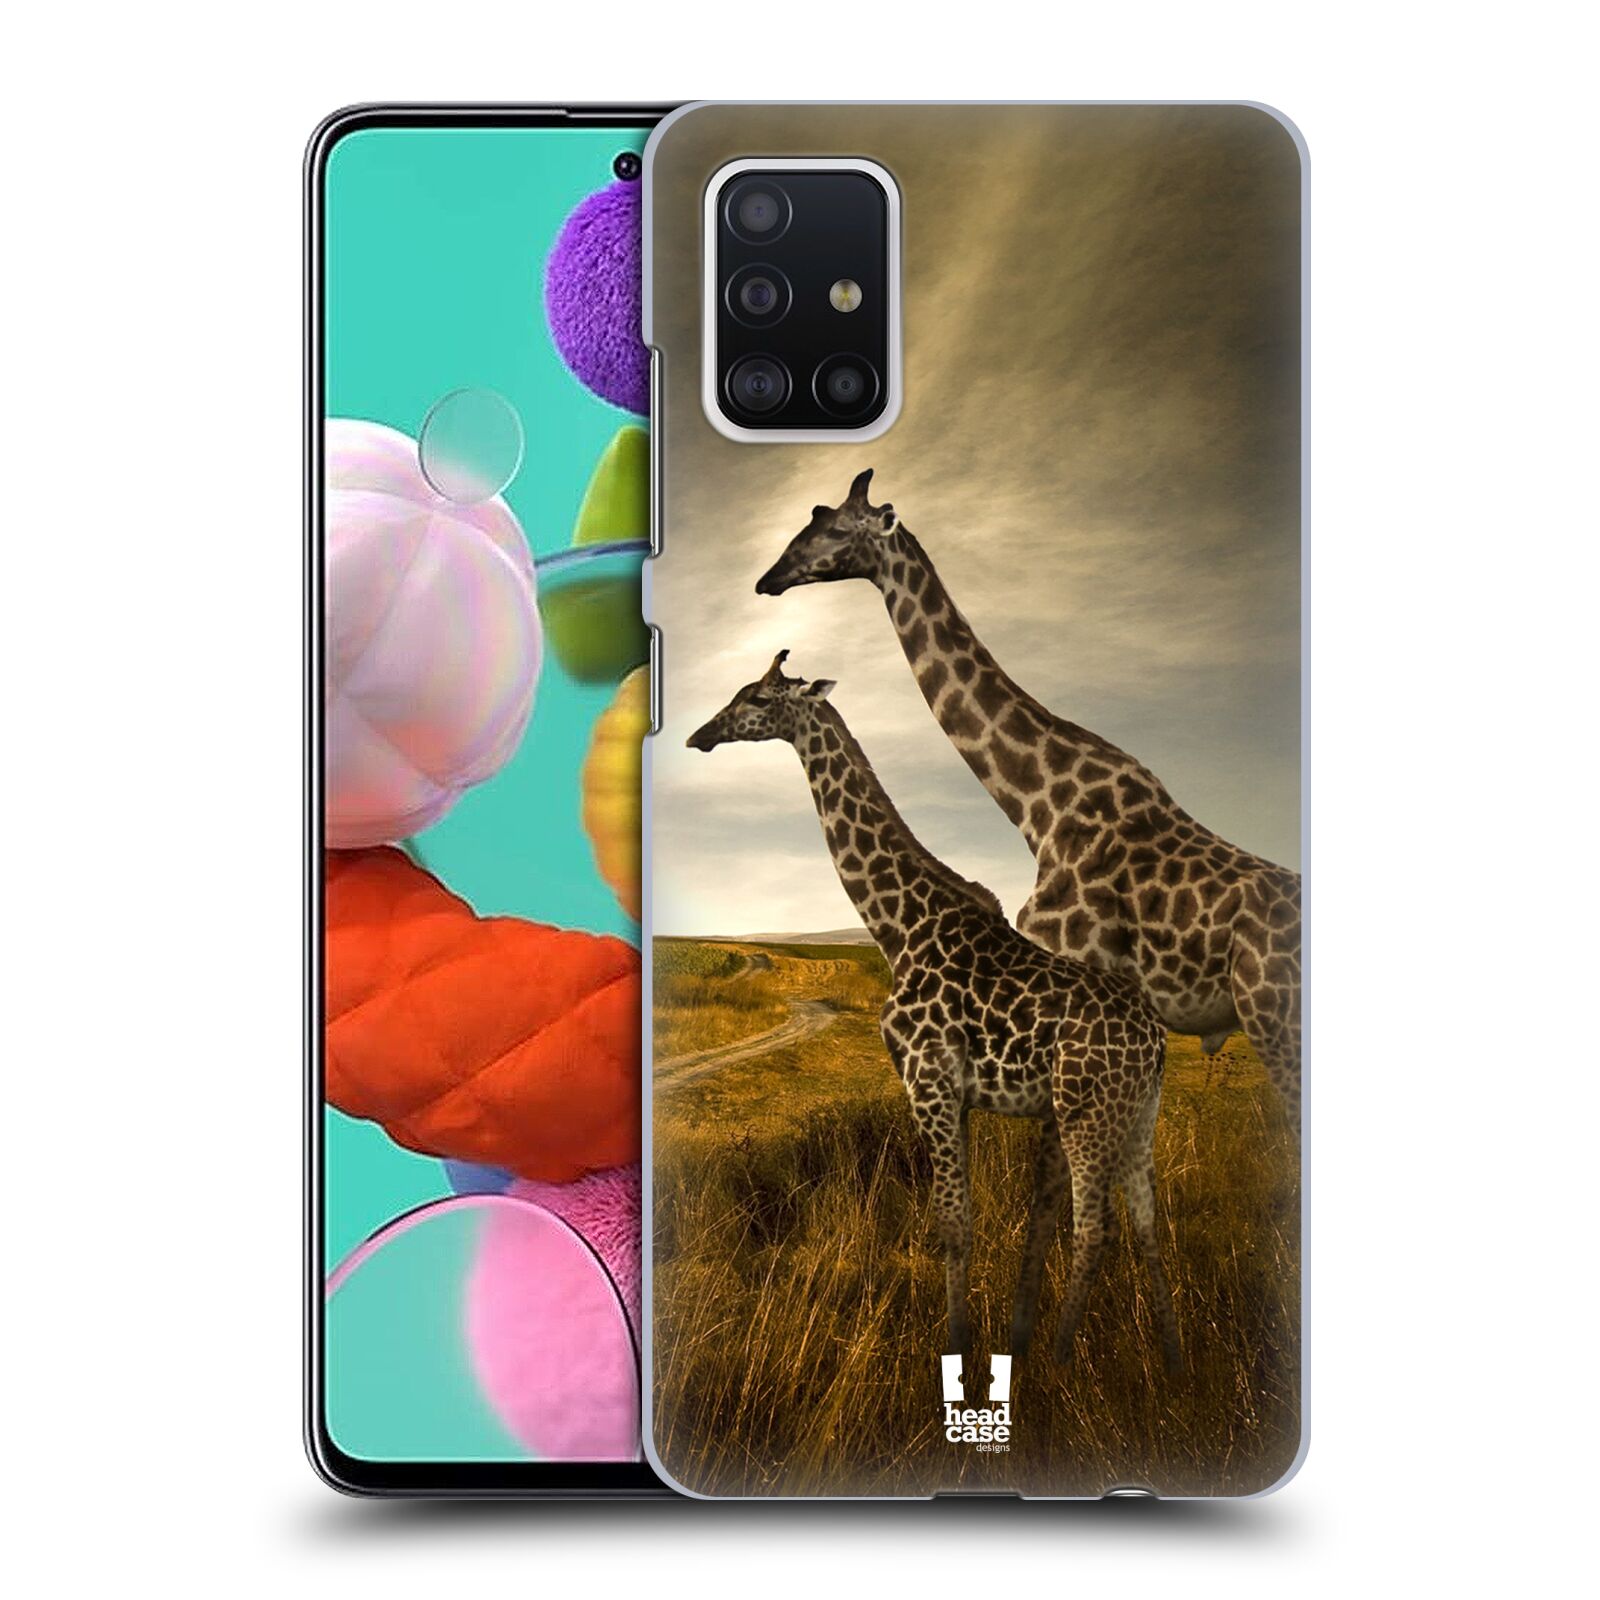 Zadní obal pro mobil Samsung Galaxy A51 - HEAD CASE - Svět zvířat žirafy